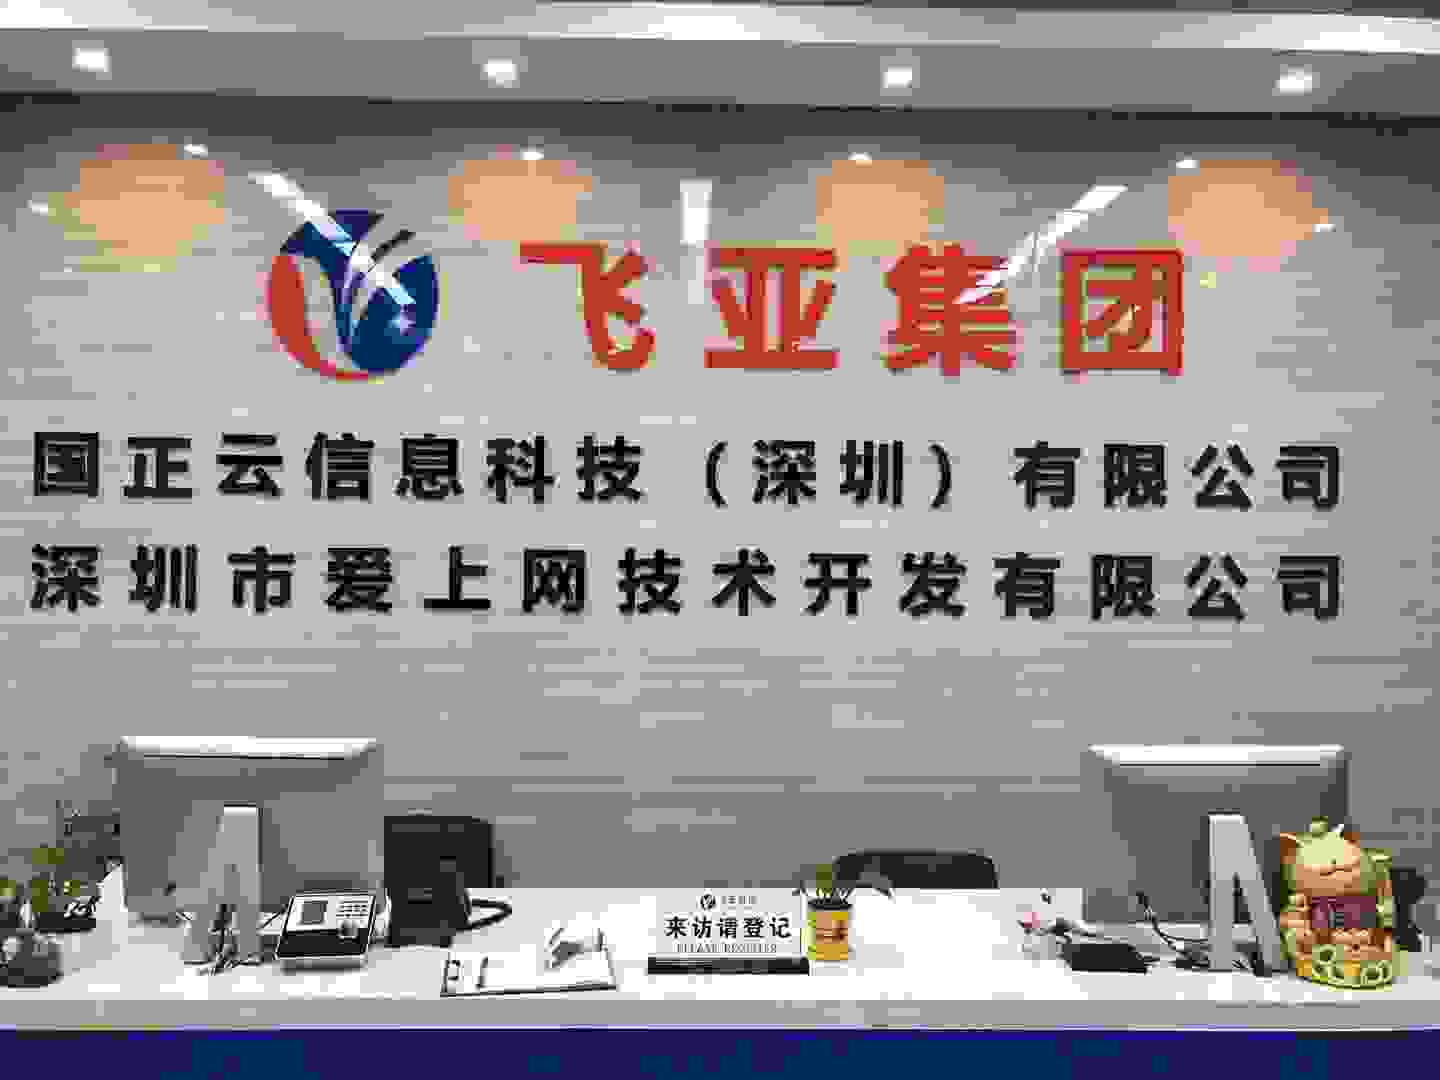 广东飞亚正式重组命名为广东飞亚控股集团"总裁助手”